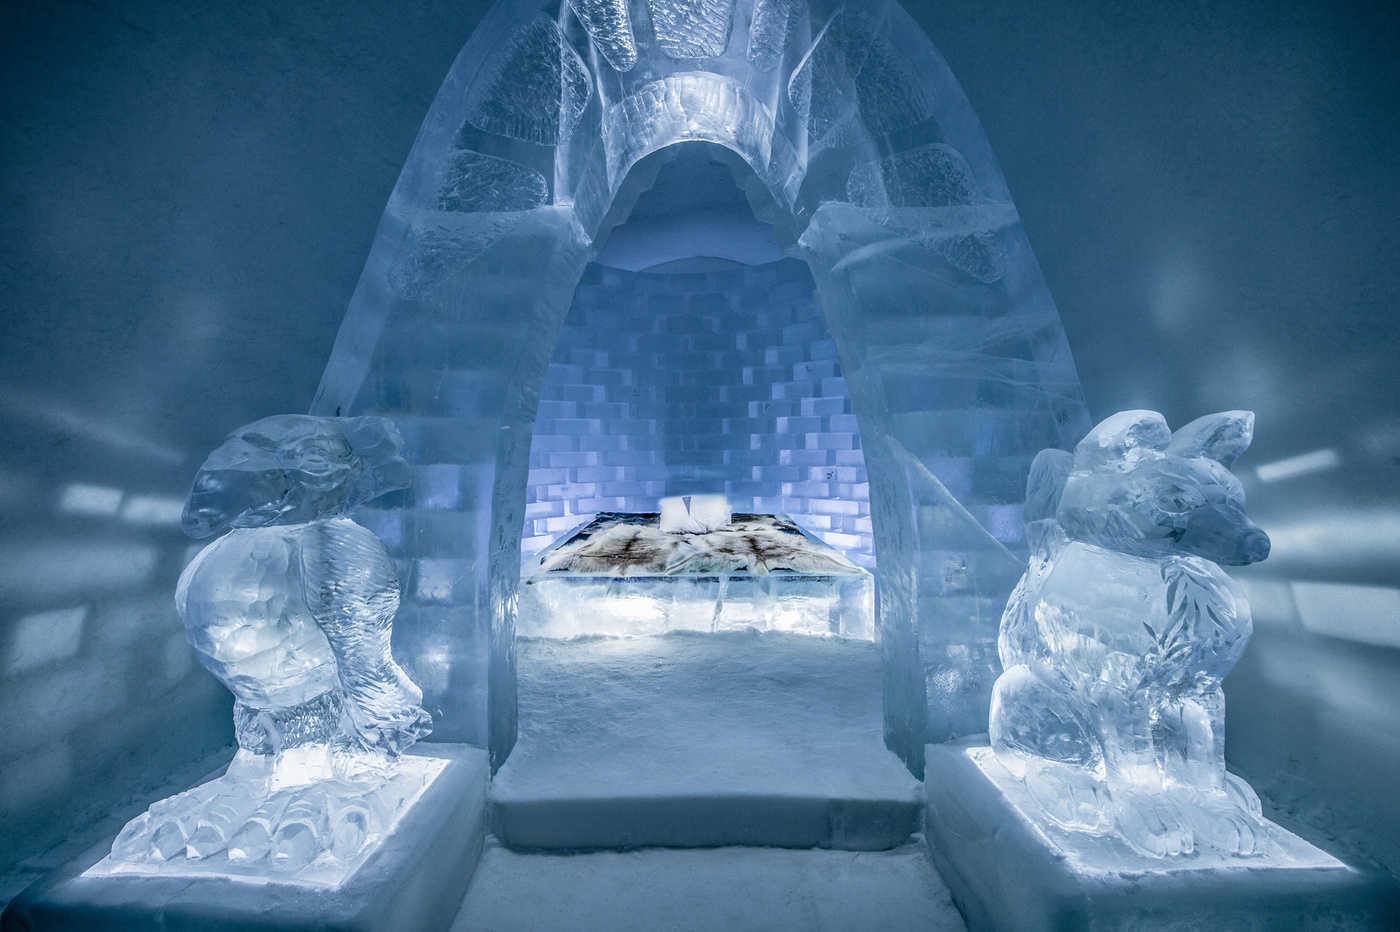 imagen 10 de Icehotel, el hotel de hielo, ha abierto sus suites de invierno con mucho arte.